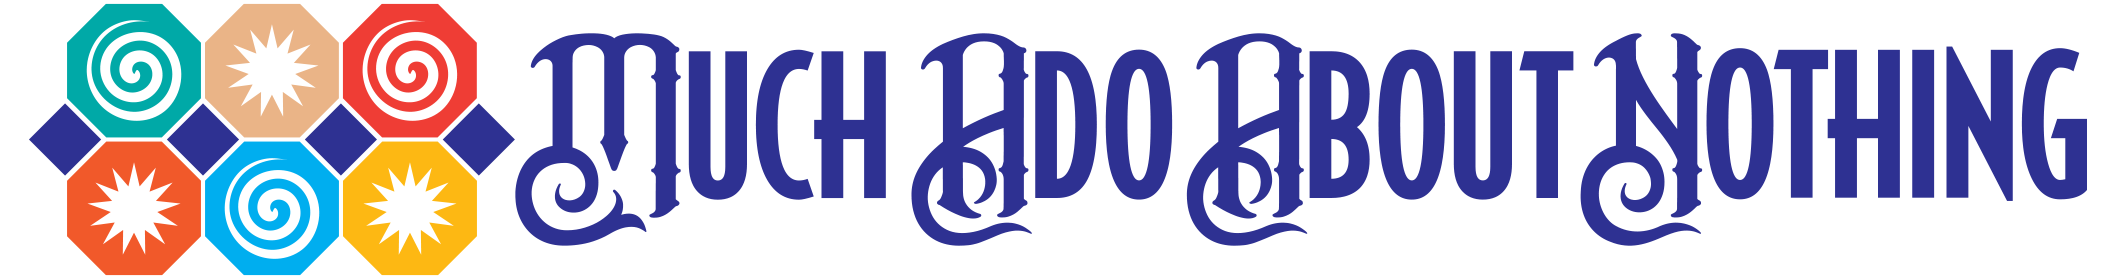 MuchAdo_LogoFinal_H.png (2117×279)